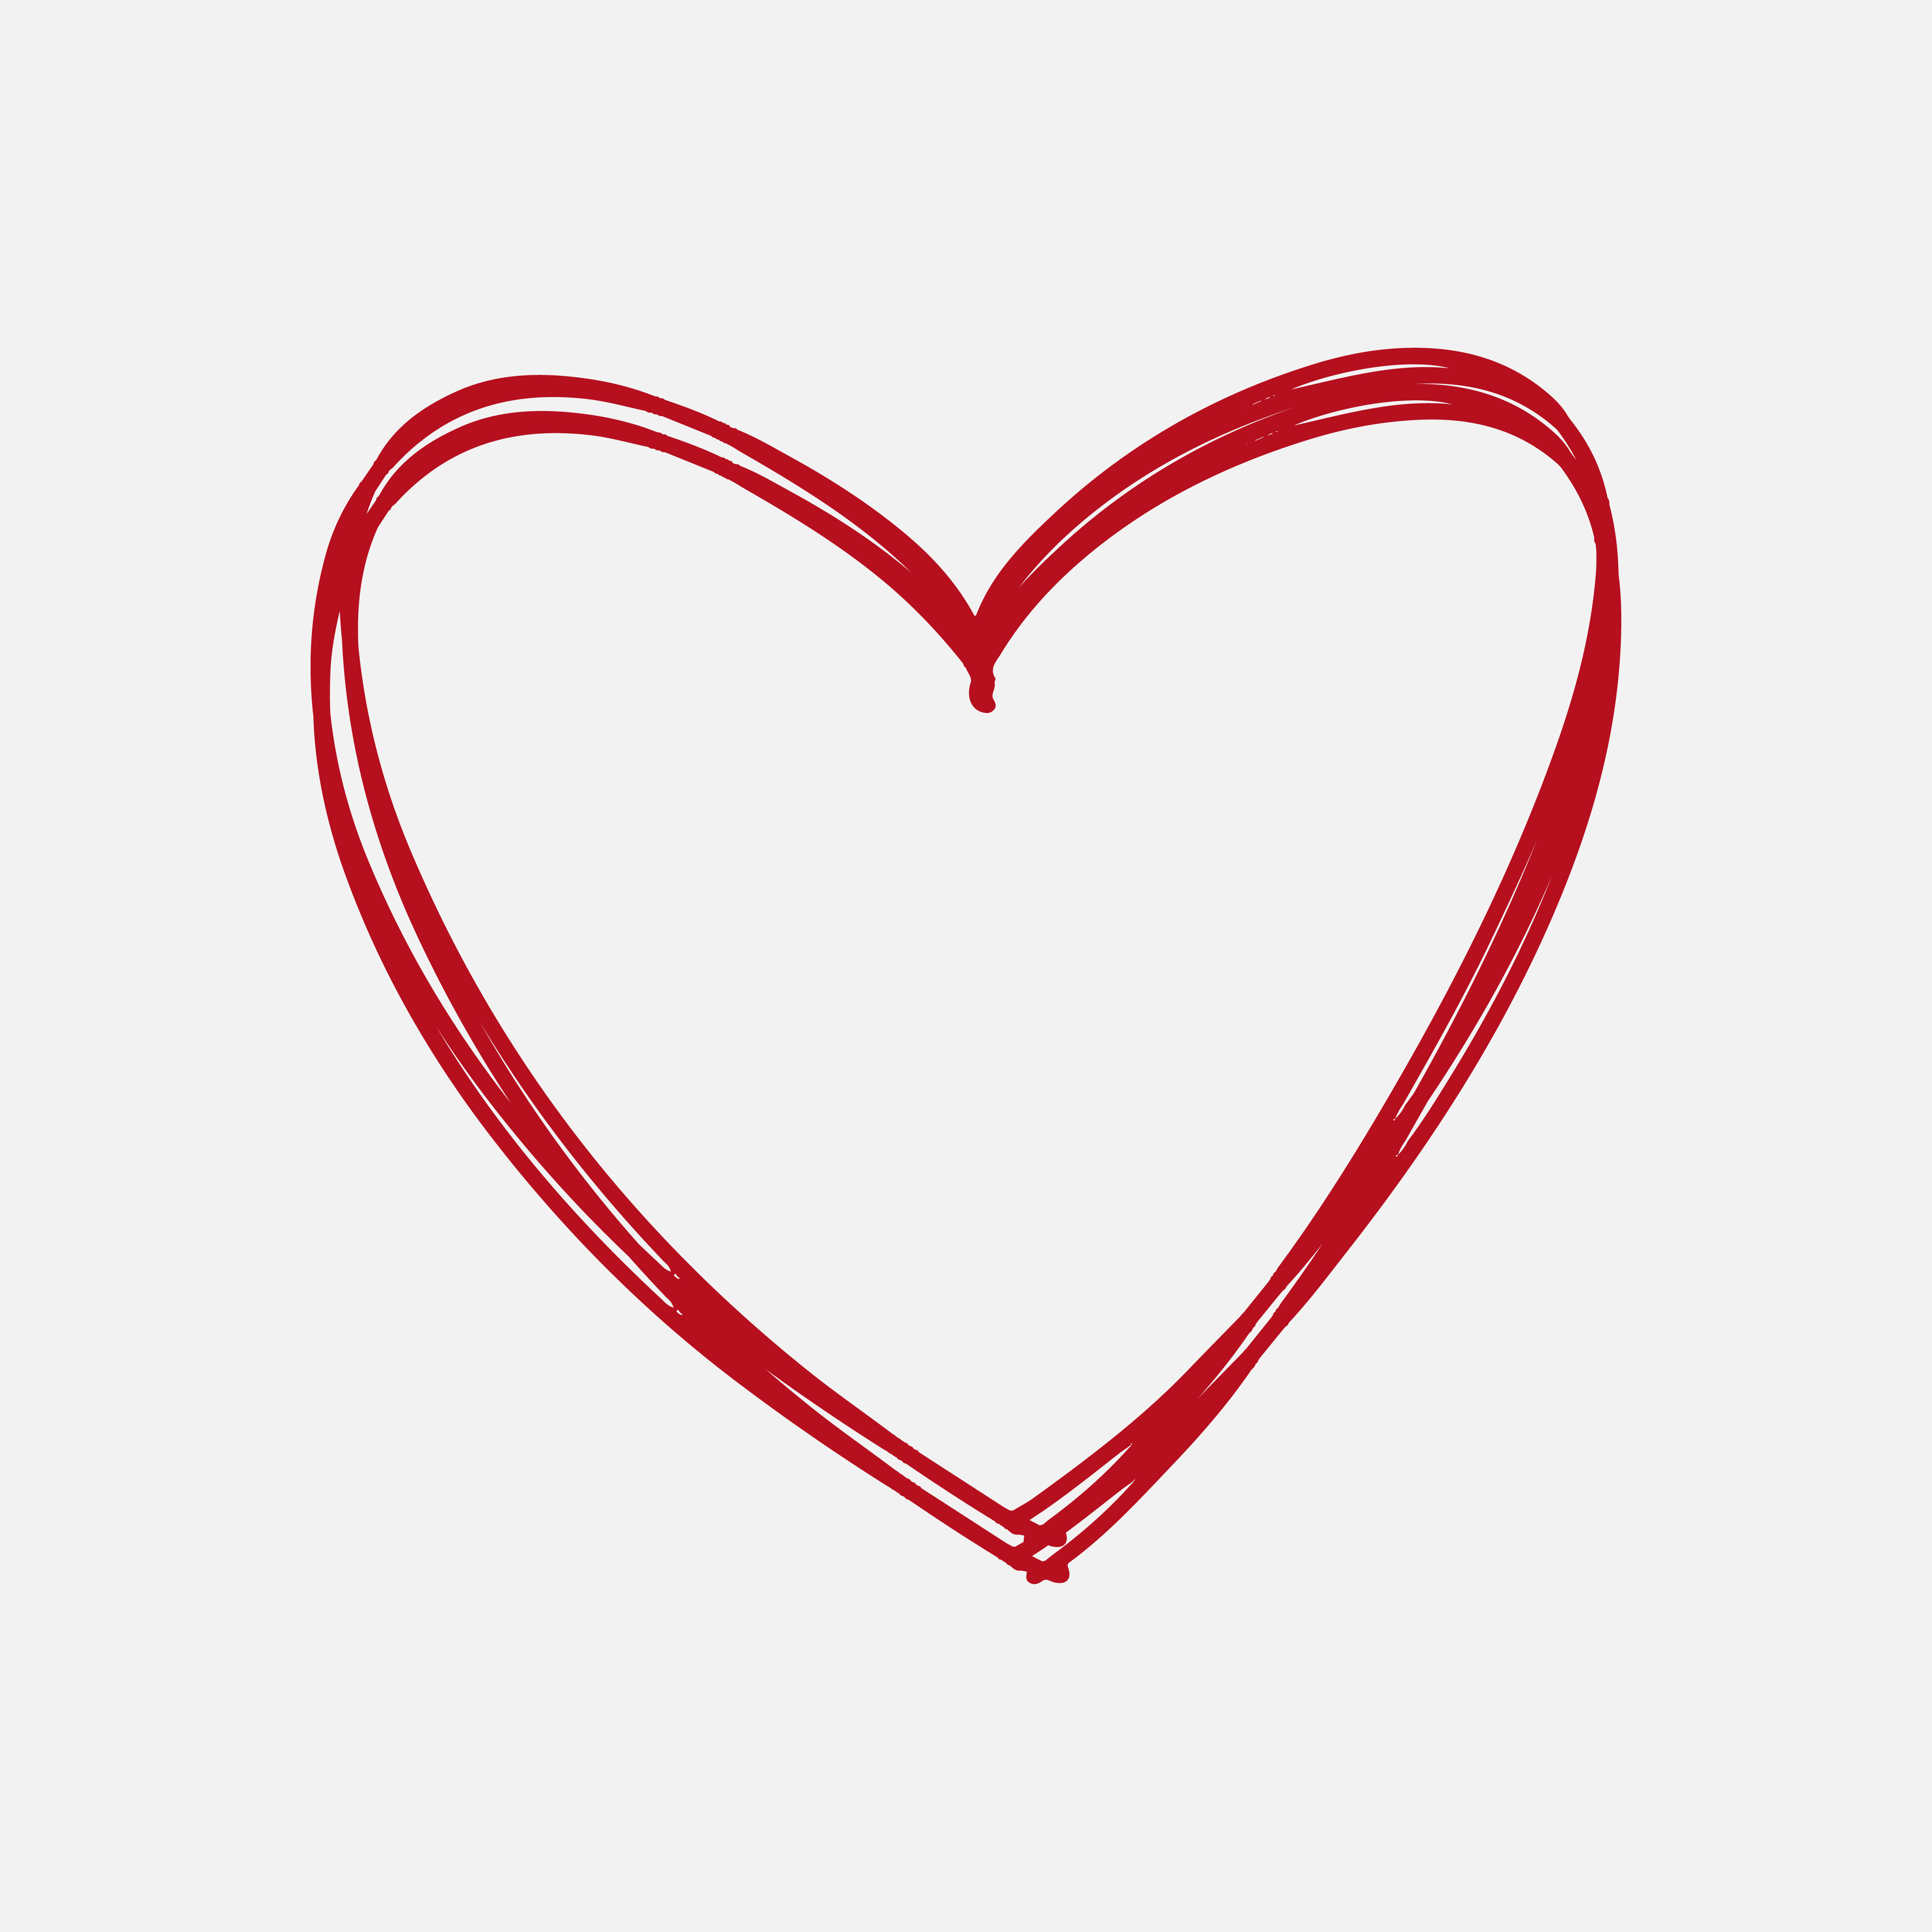 heart design illustrator file download